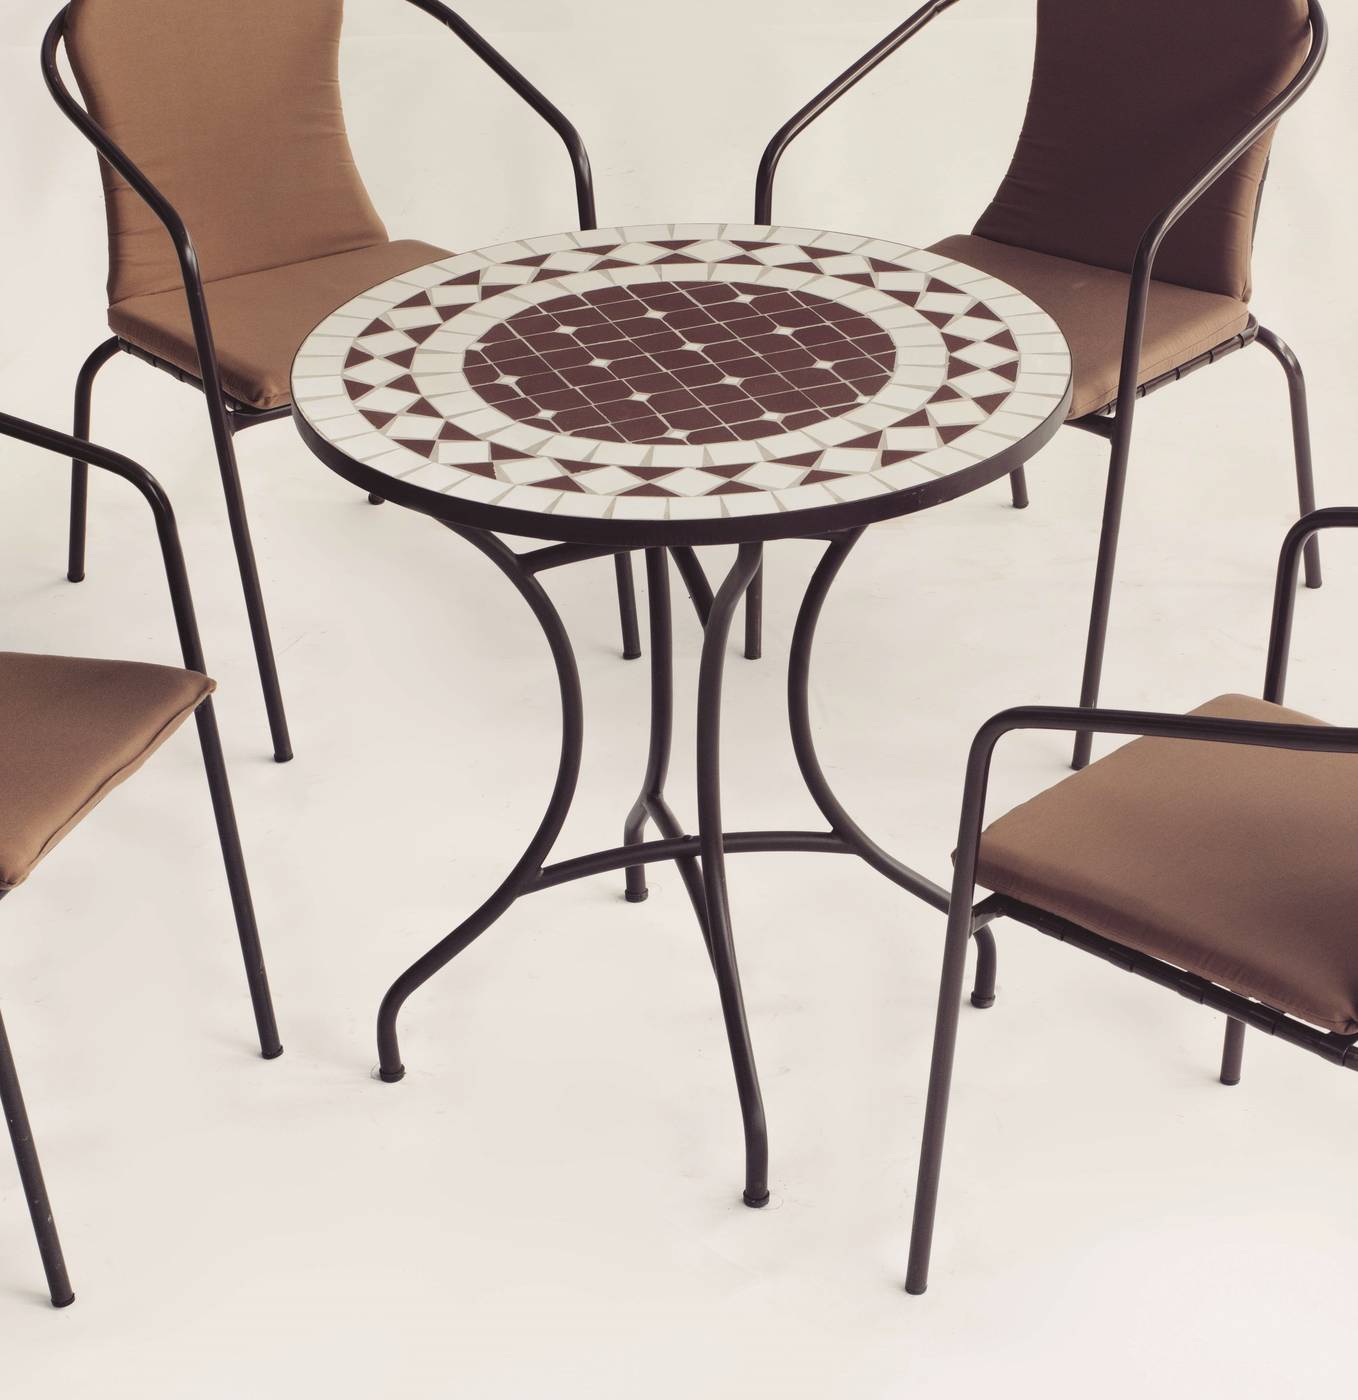 Conjunto Mosaico Oran75-Bahia - Conjunto de forja color marrón: mesa con tablero mosaico de 75 cm + 4 sillones de ratán sintético con cojines.